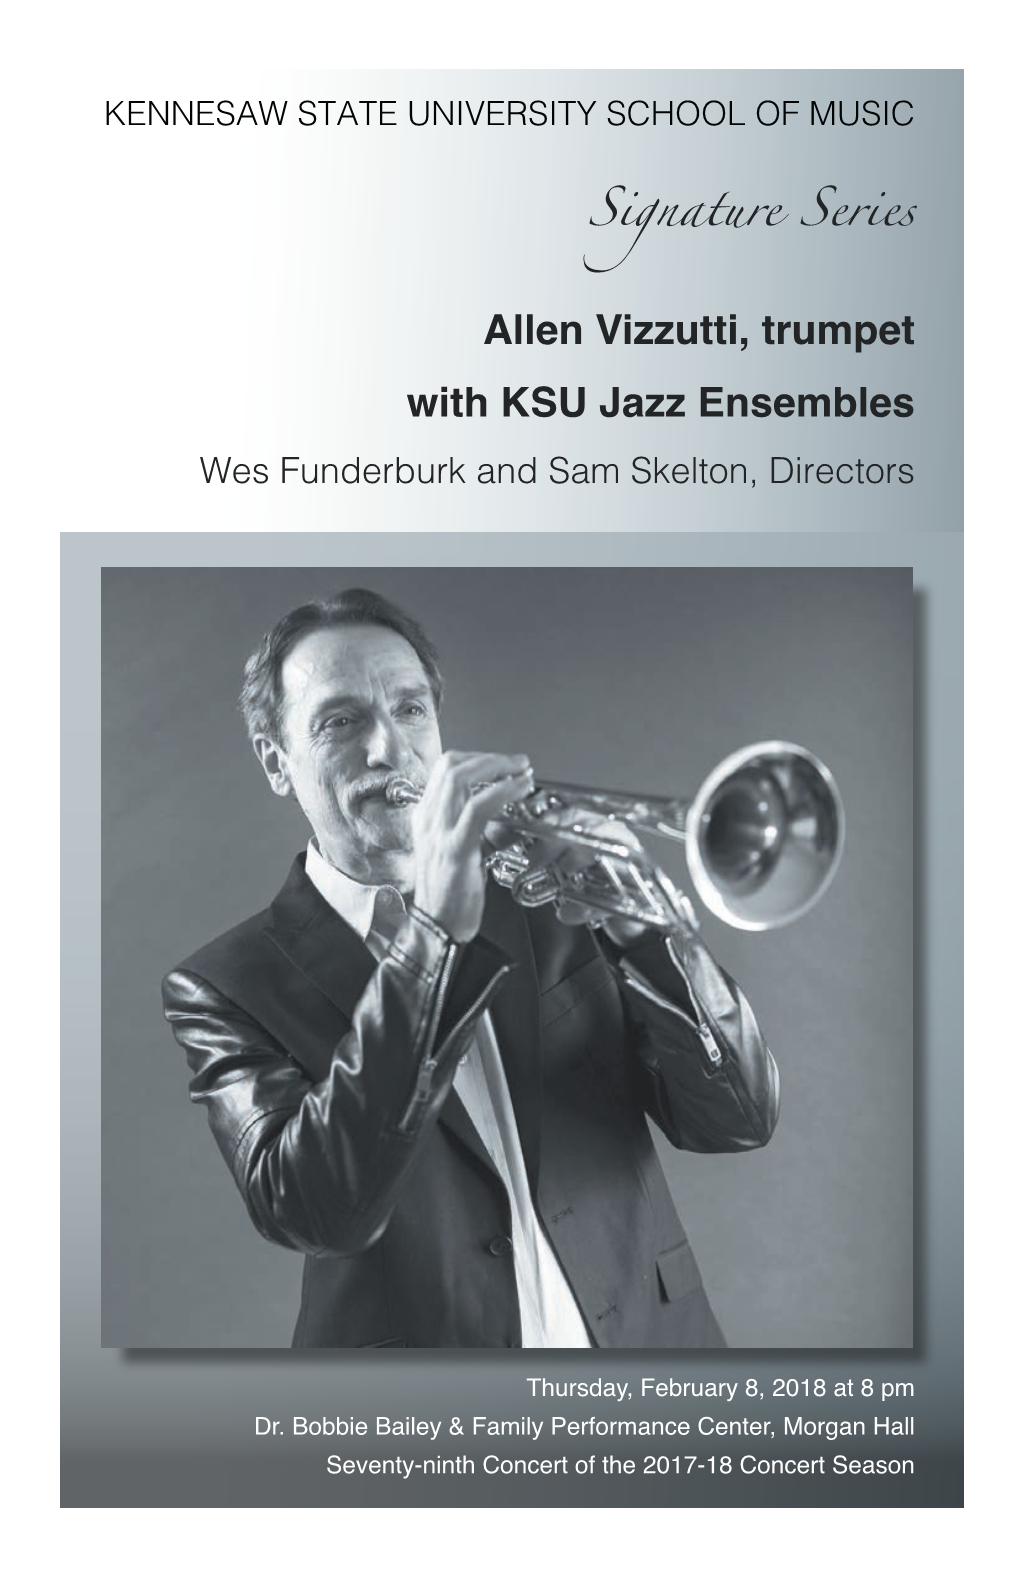 Allen Vizzutti, Trumpet with KSU Jazz Ensembles Wes Funderburk and Sam Skelton, Directors